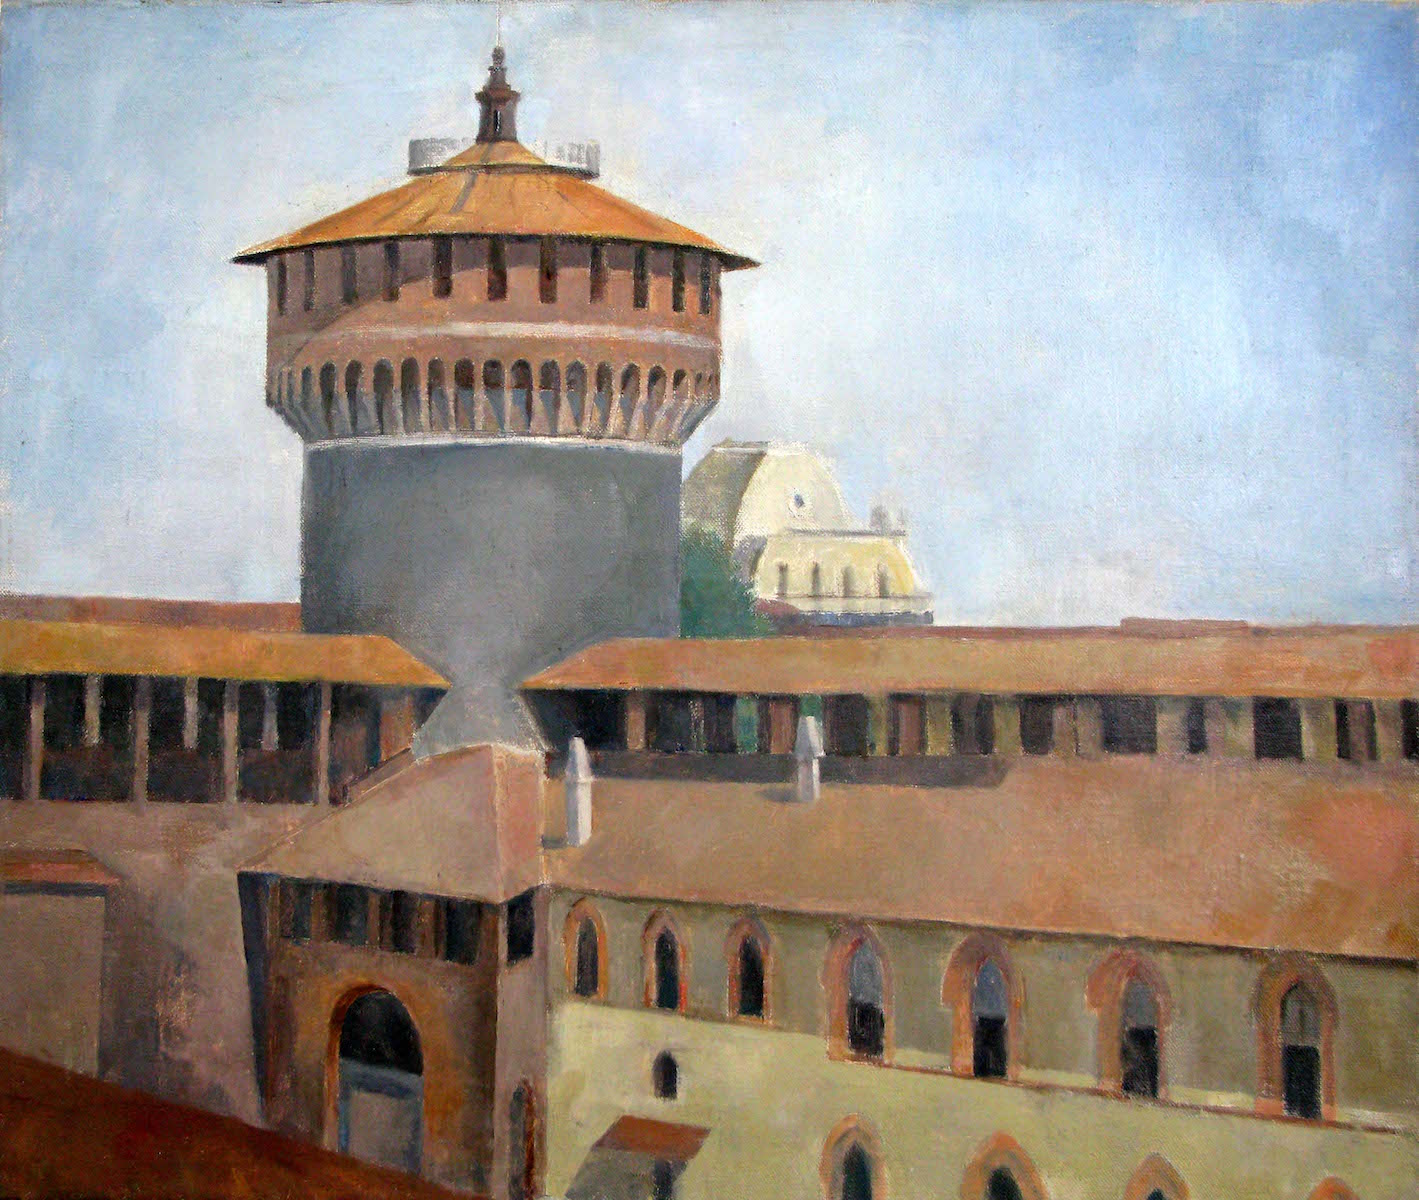 Castello Sforzesco, 23 x 27 inches, oil on linen, 1983.